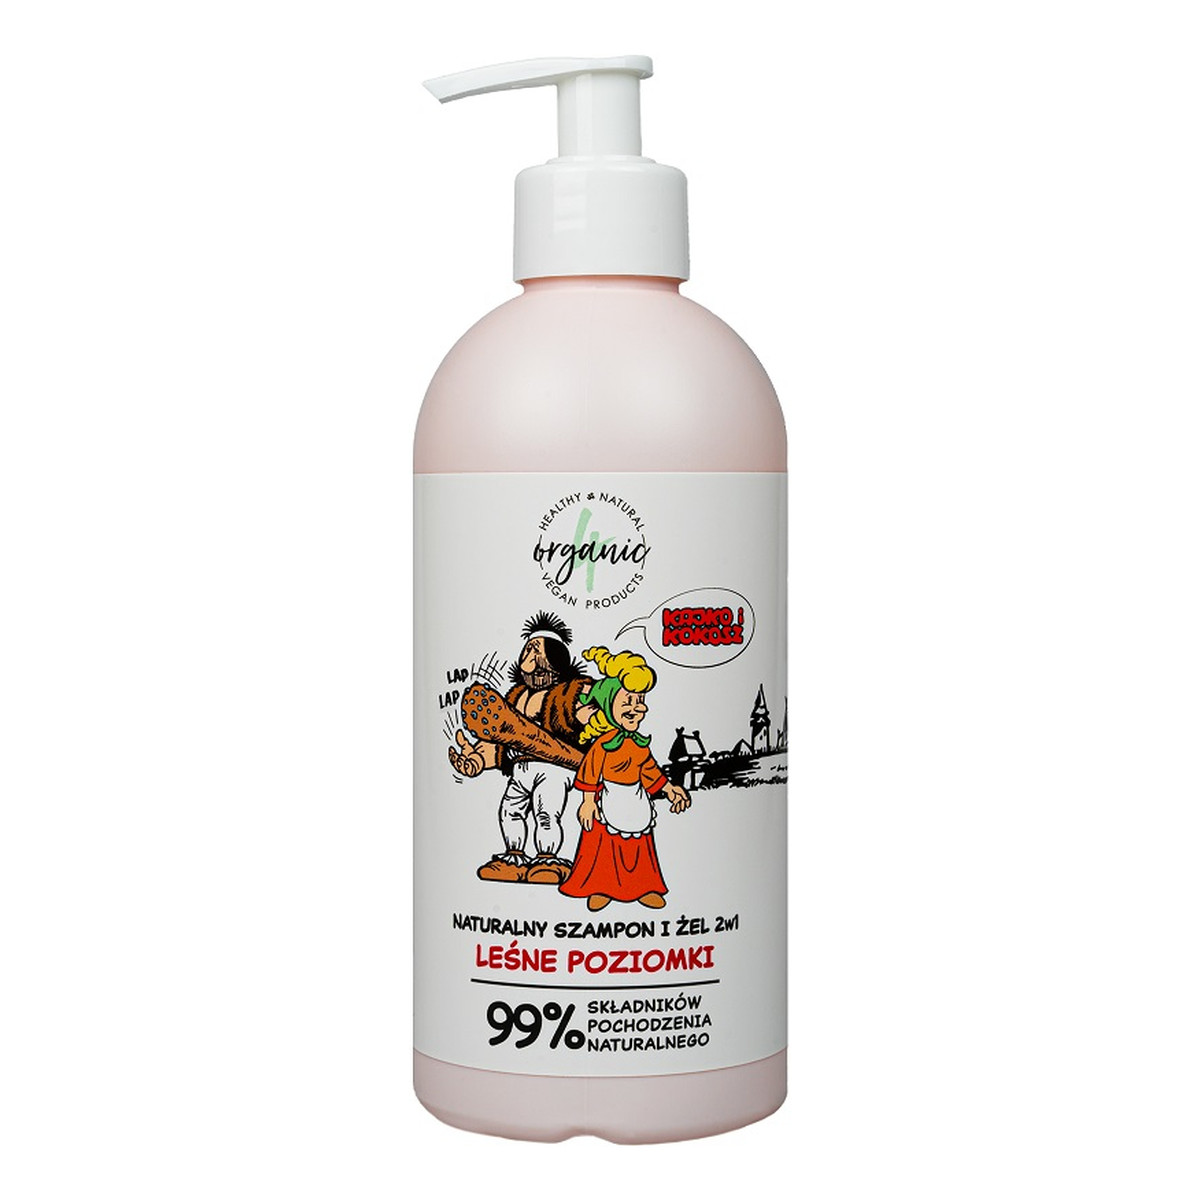 4organic Kajko i Kokosz naturalny szampon i Żel do mycia dla dzieci 2w1 leśne poziomki 350ml